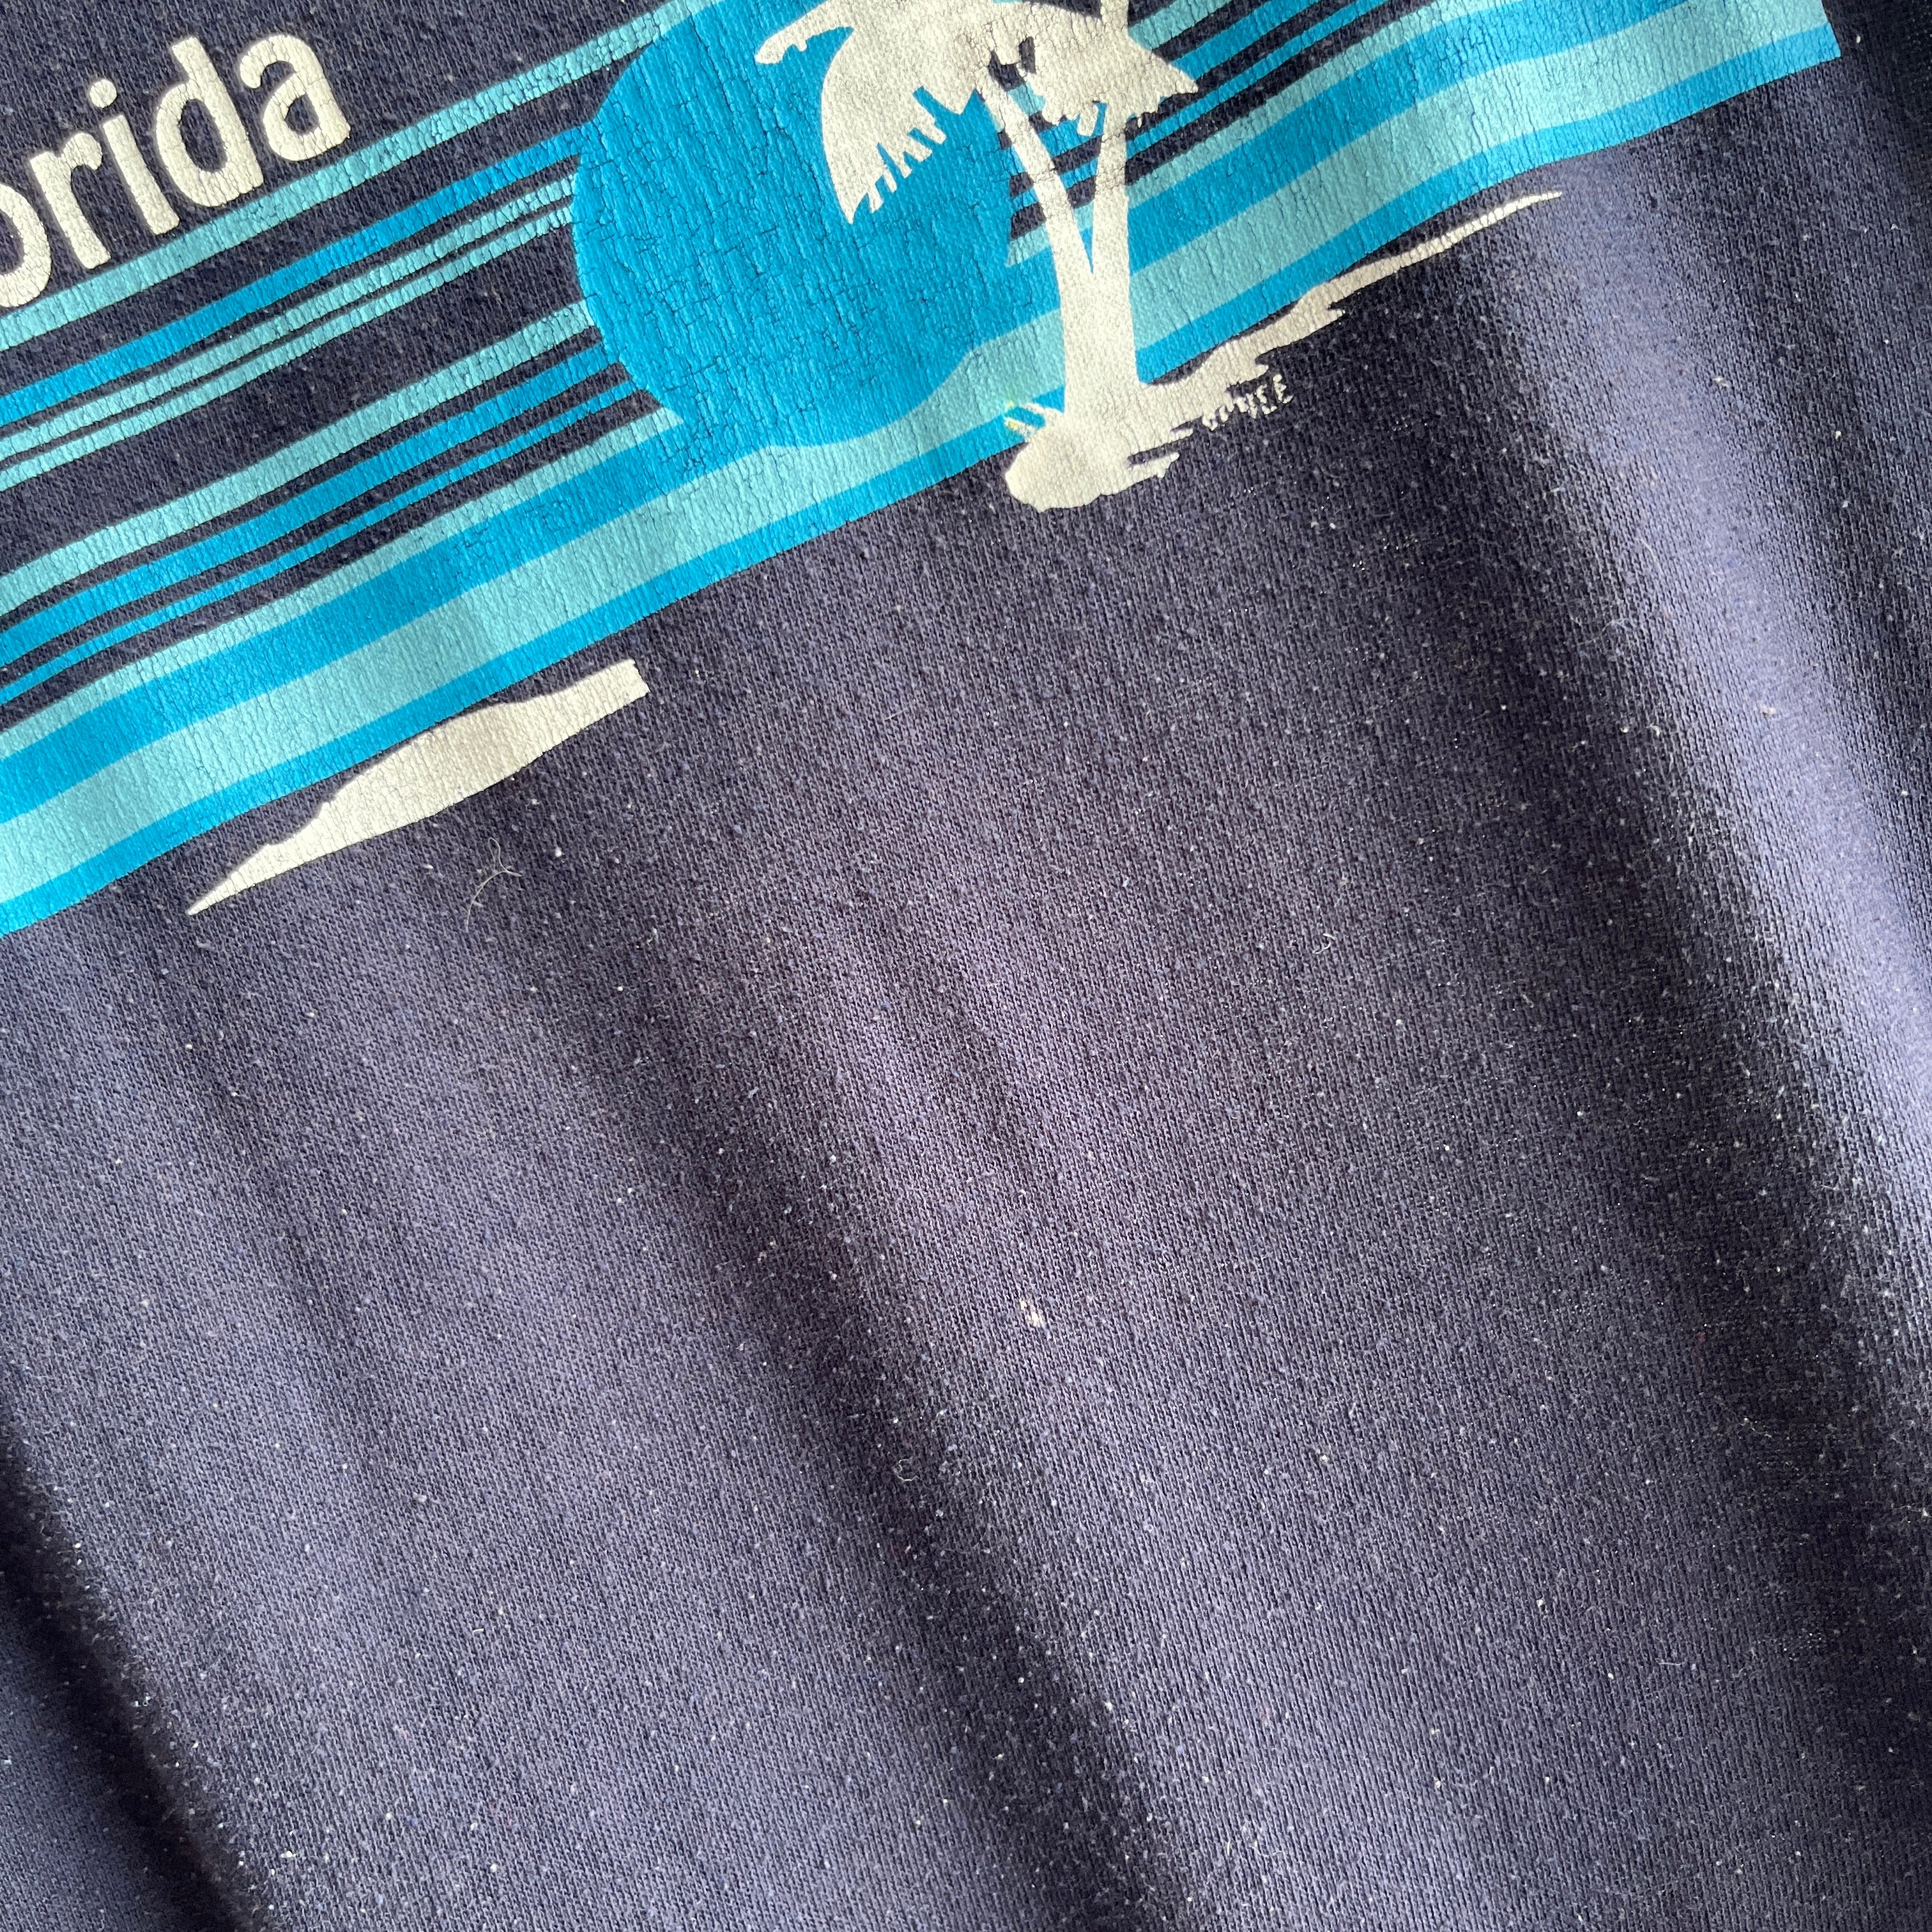 1970s Florida Sportswear T-Shirt